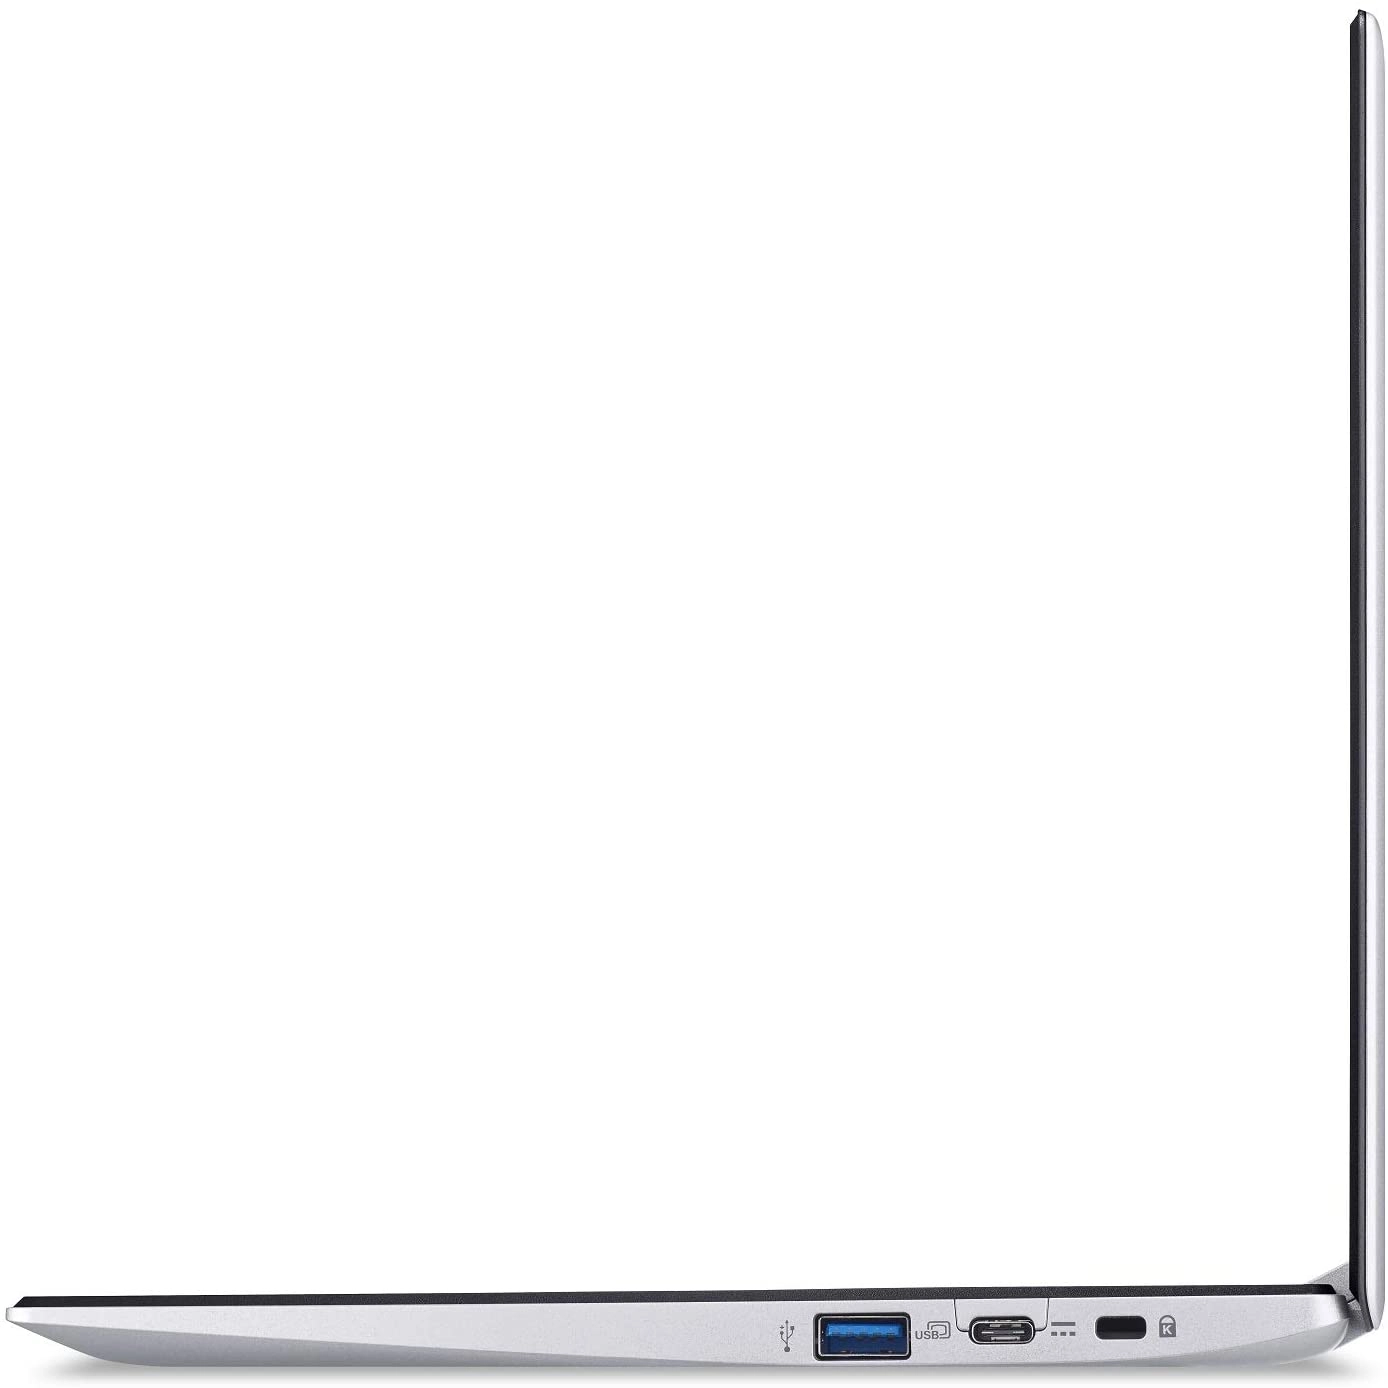 Acer CB311-9H-C12A laptop image